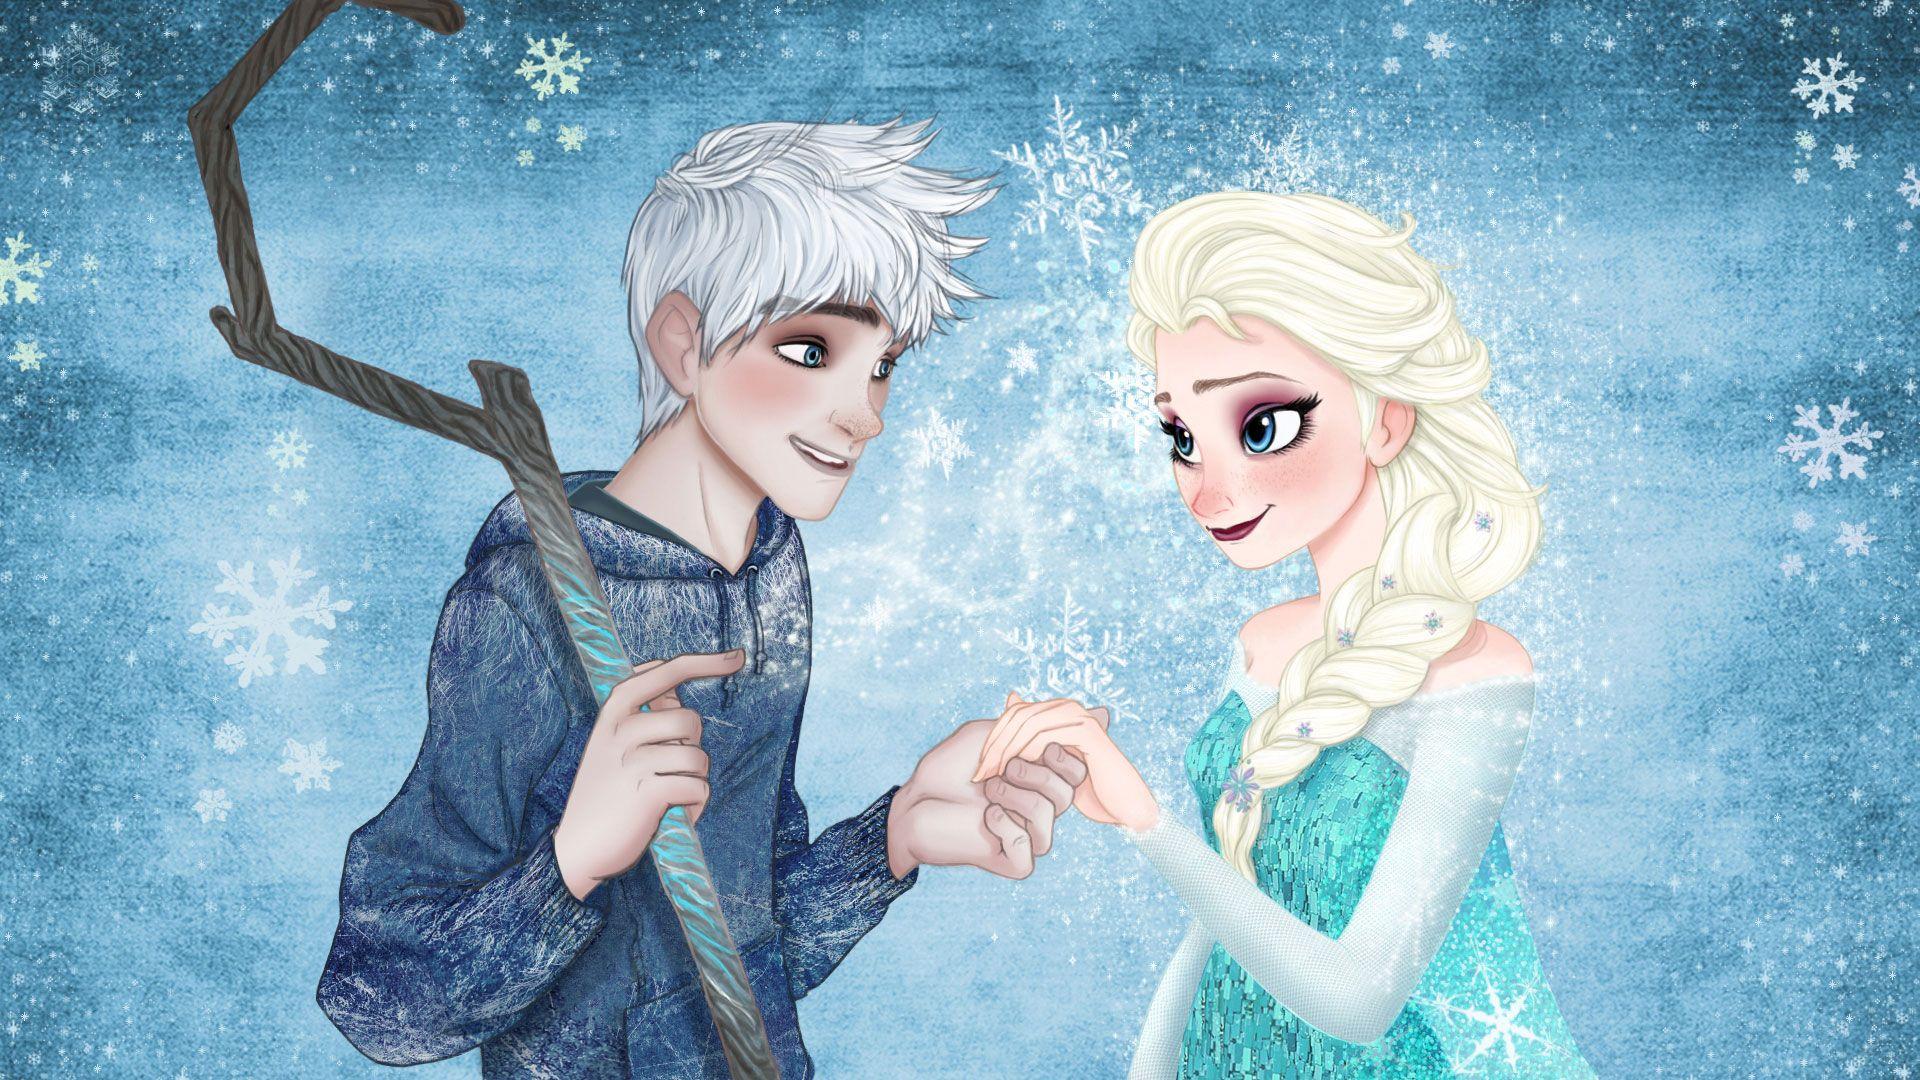 Frozen Elsa & Anna Digital Fan Art Wallpapers.